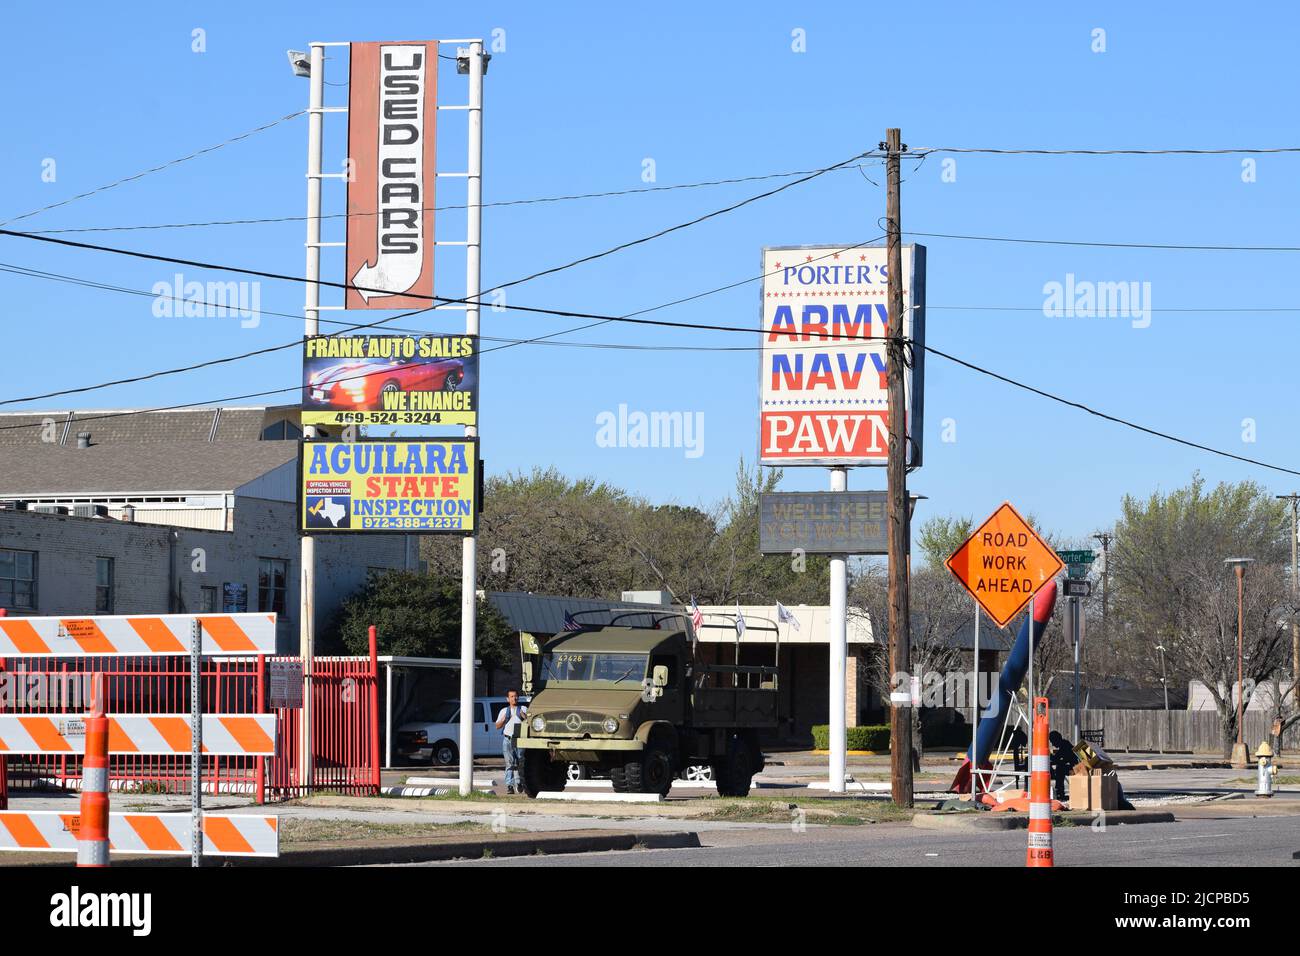 Route en construction avec des panneaux au-dessus de la publicité des voitures d'occasion et un magasin de la Marine de l'Armée de terre et de la boutique de pion Banque D'Images